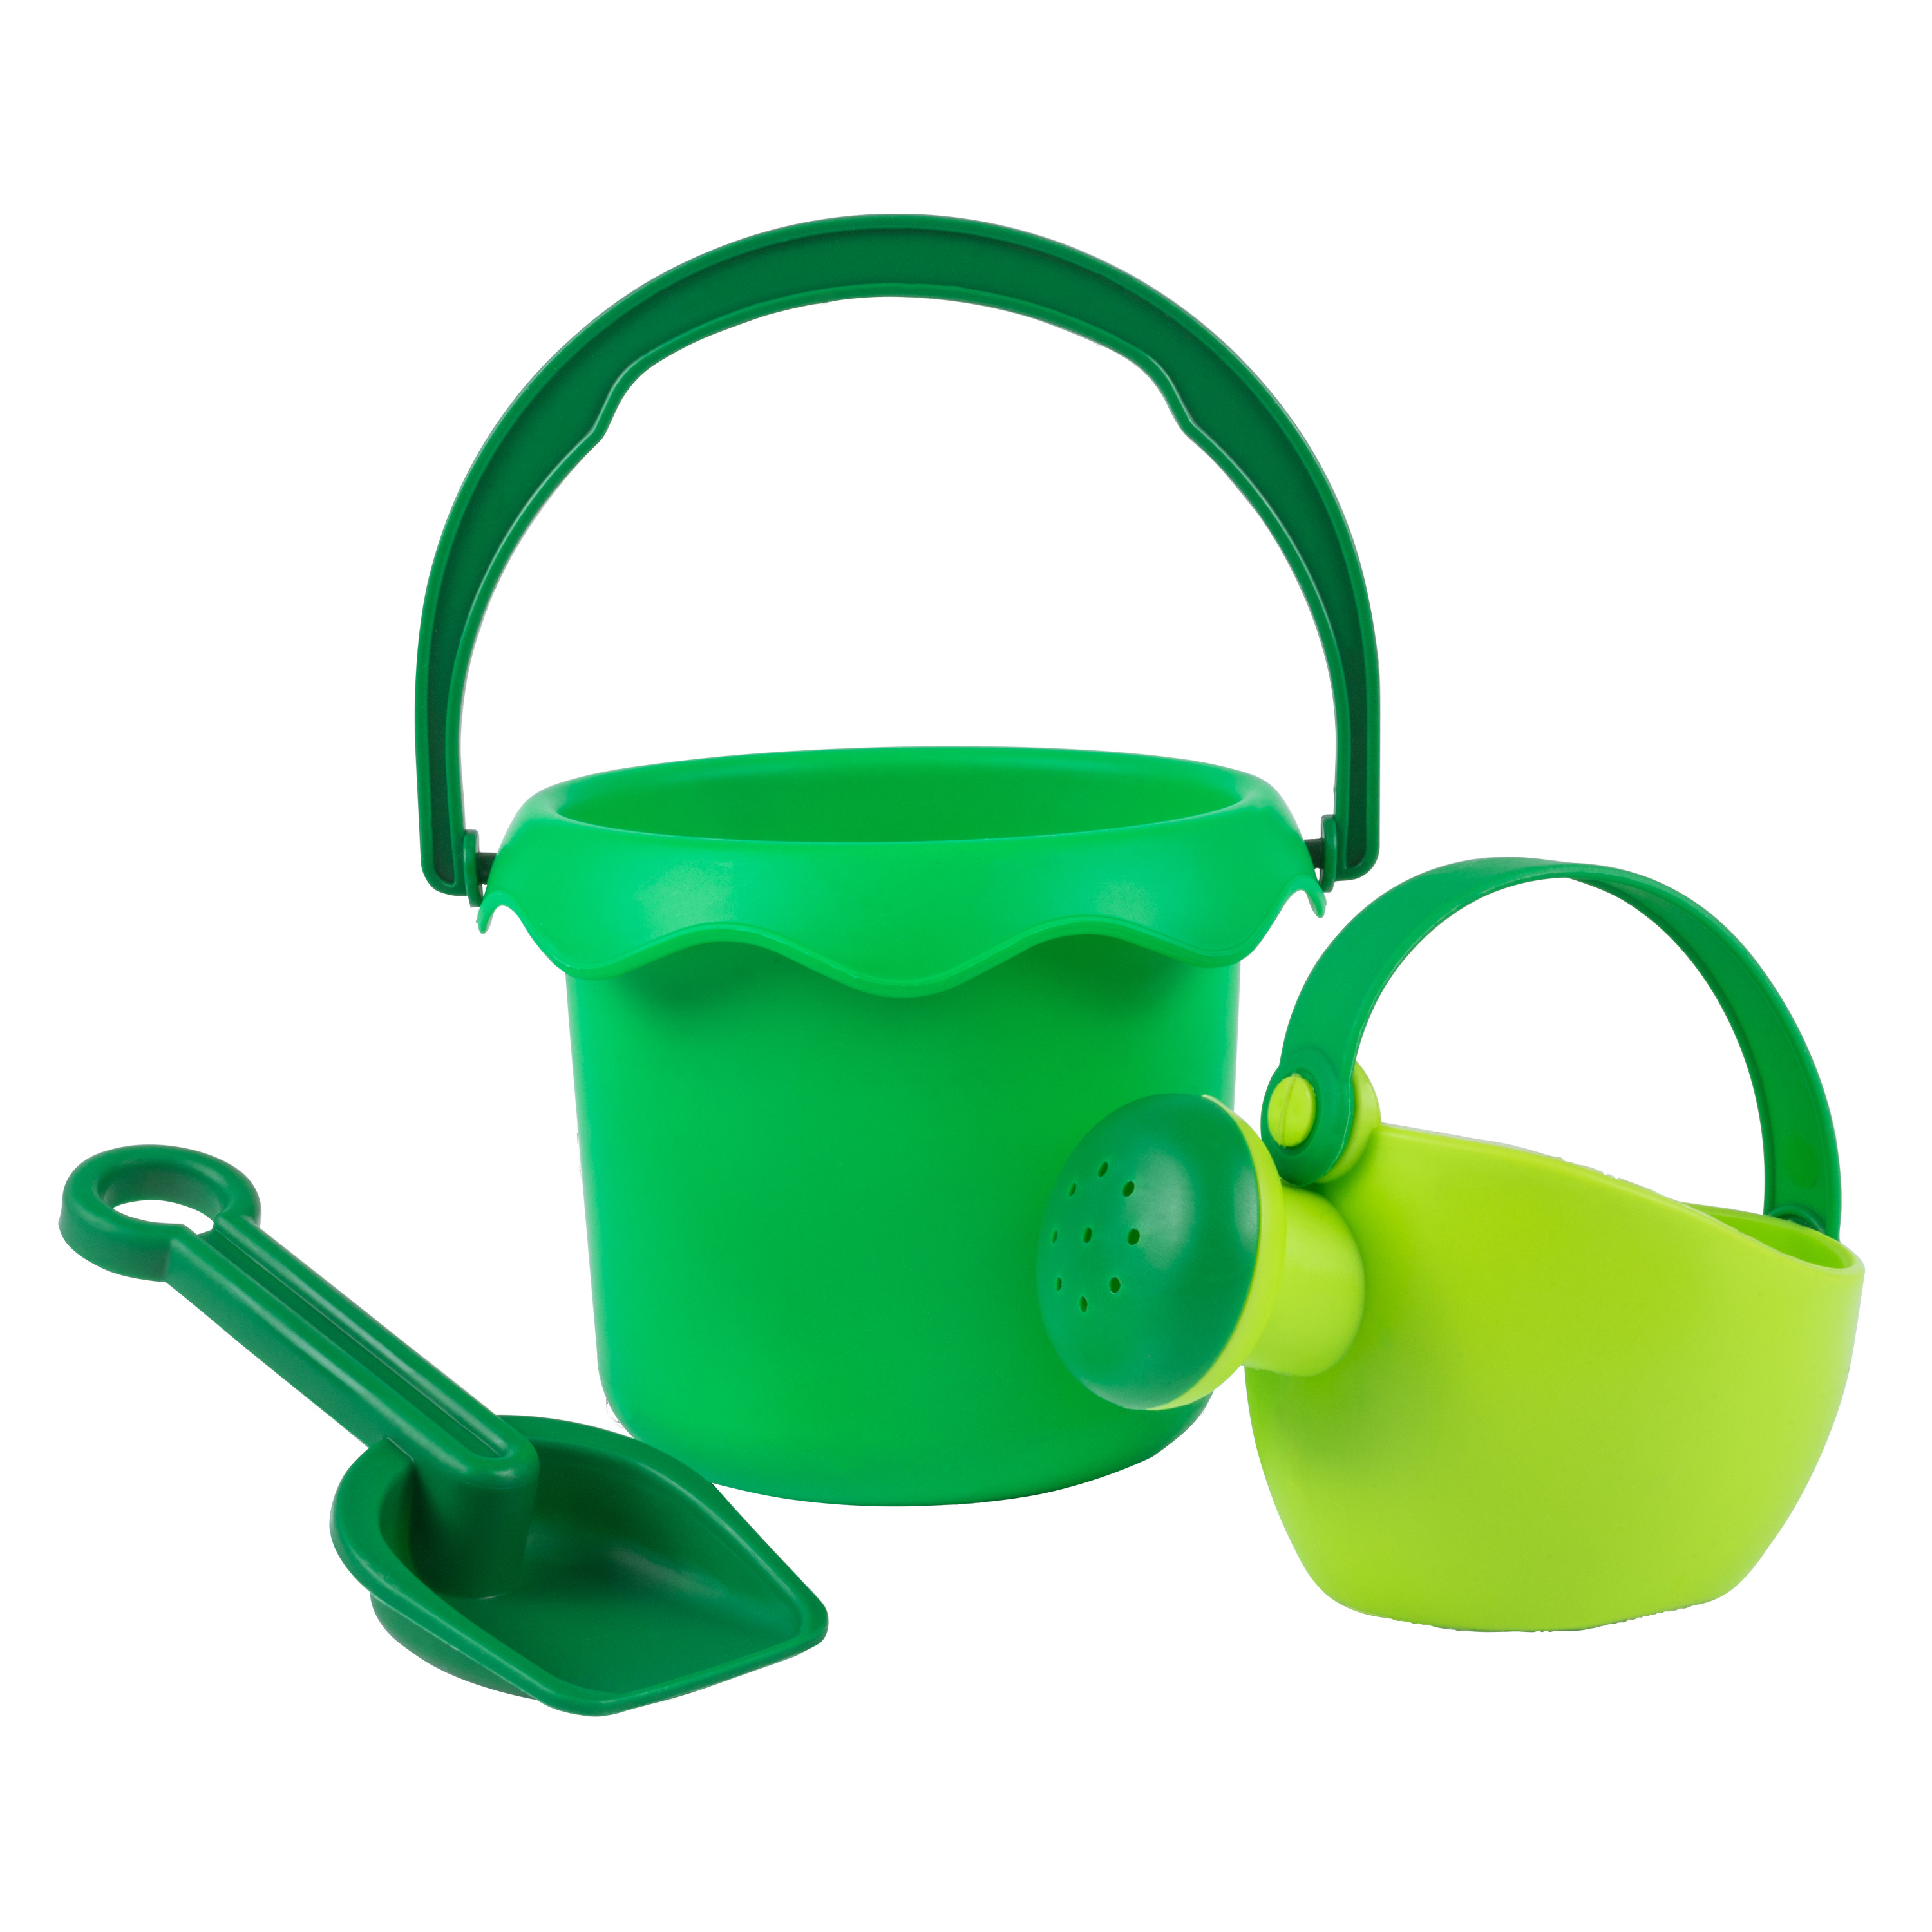 JKK Sandspielzeug-Set 'Soft' grün, 3-teilig